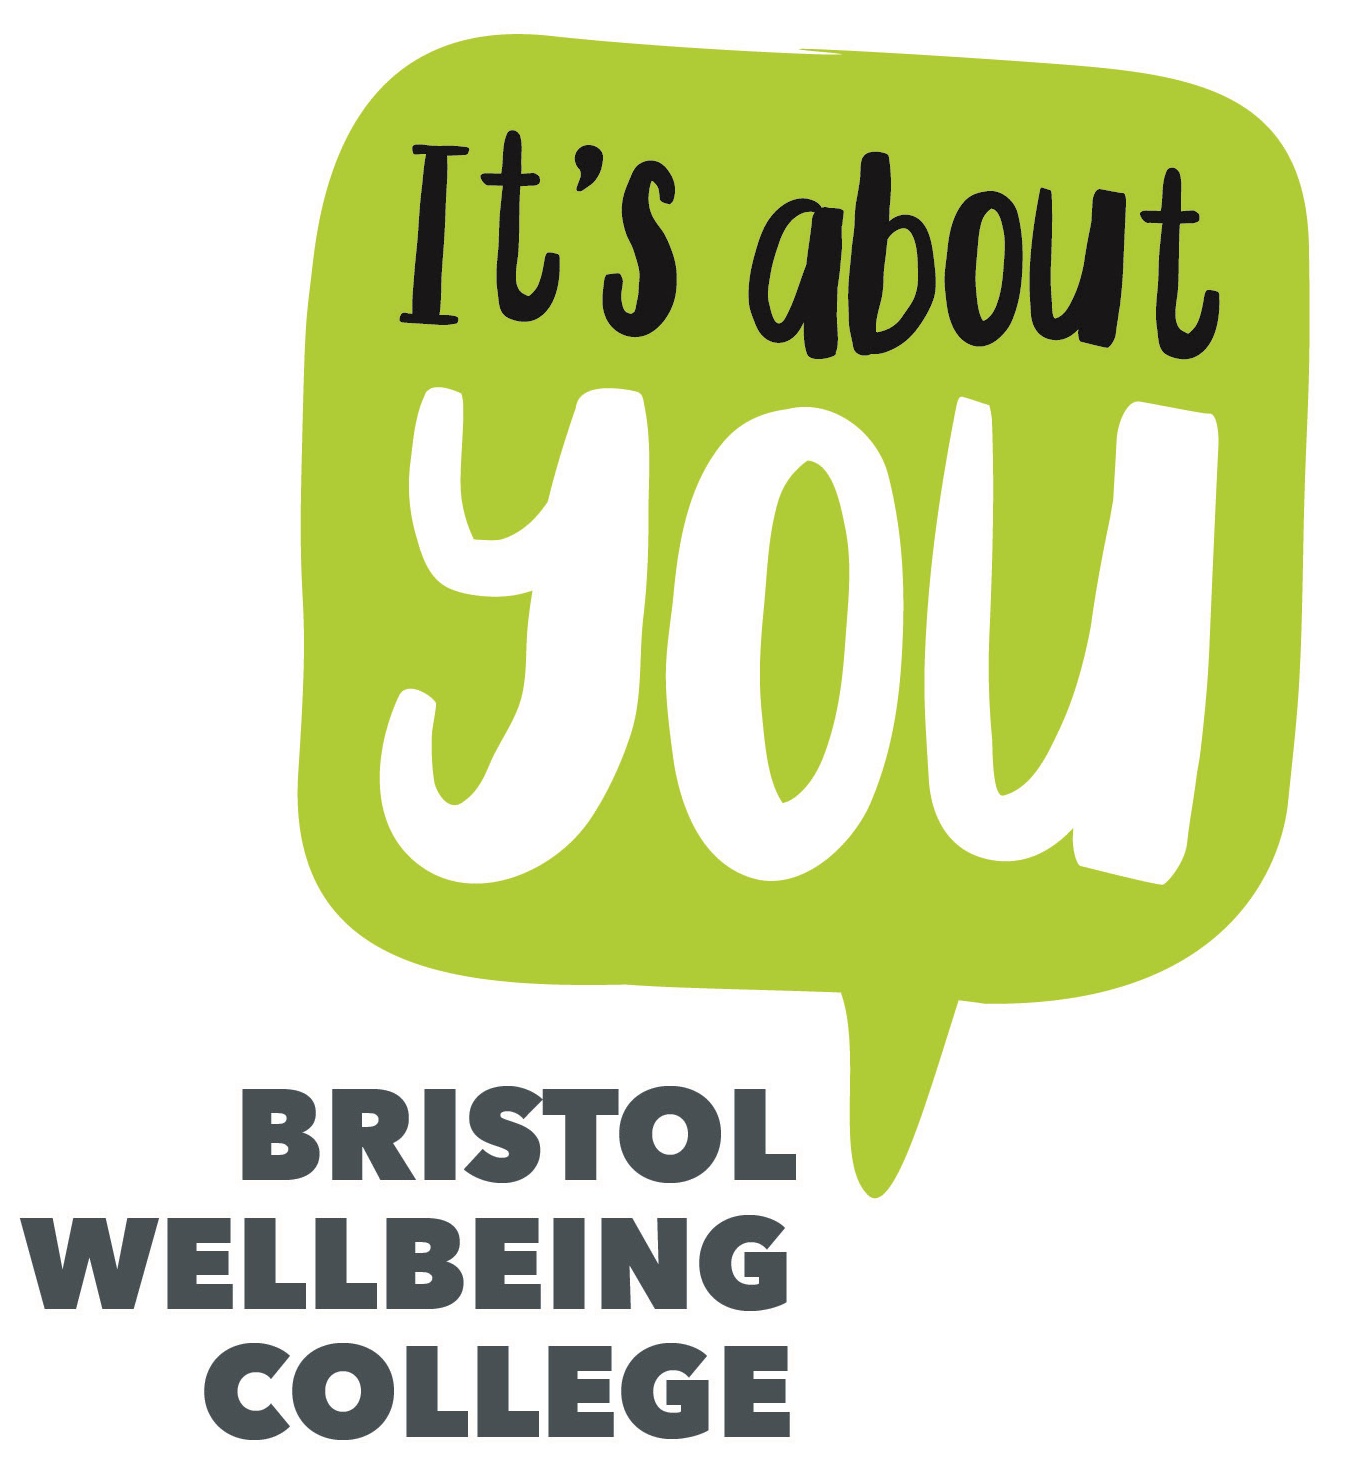 Bristol Wellbeing College